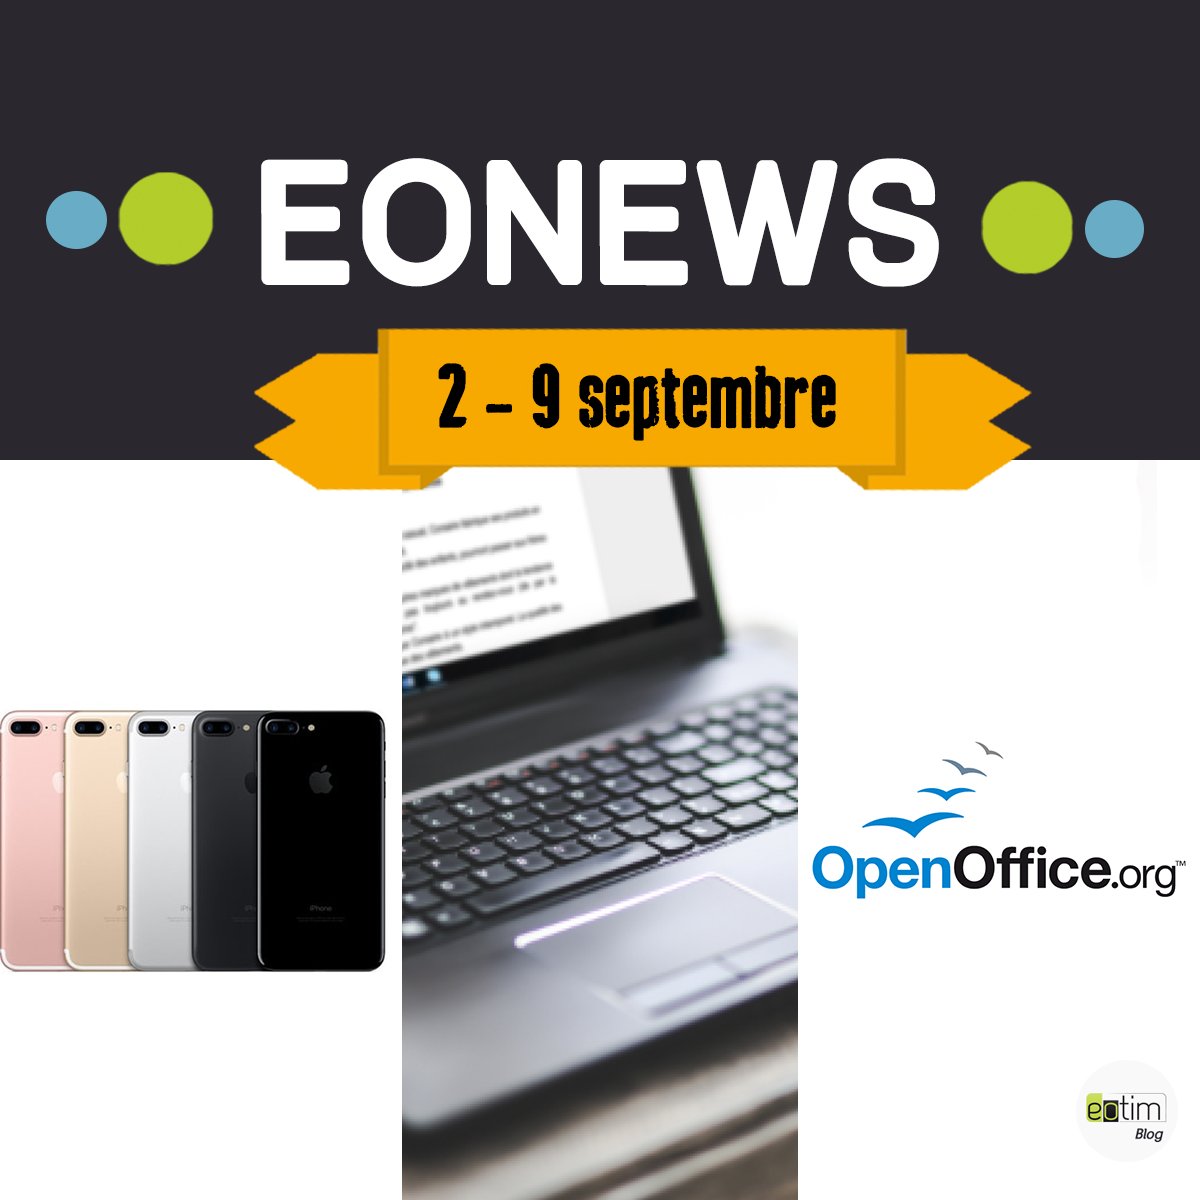 Eonews : l'essentiel de la semaine (2 - 9 septembre)